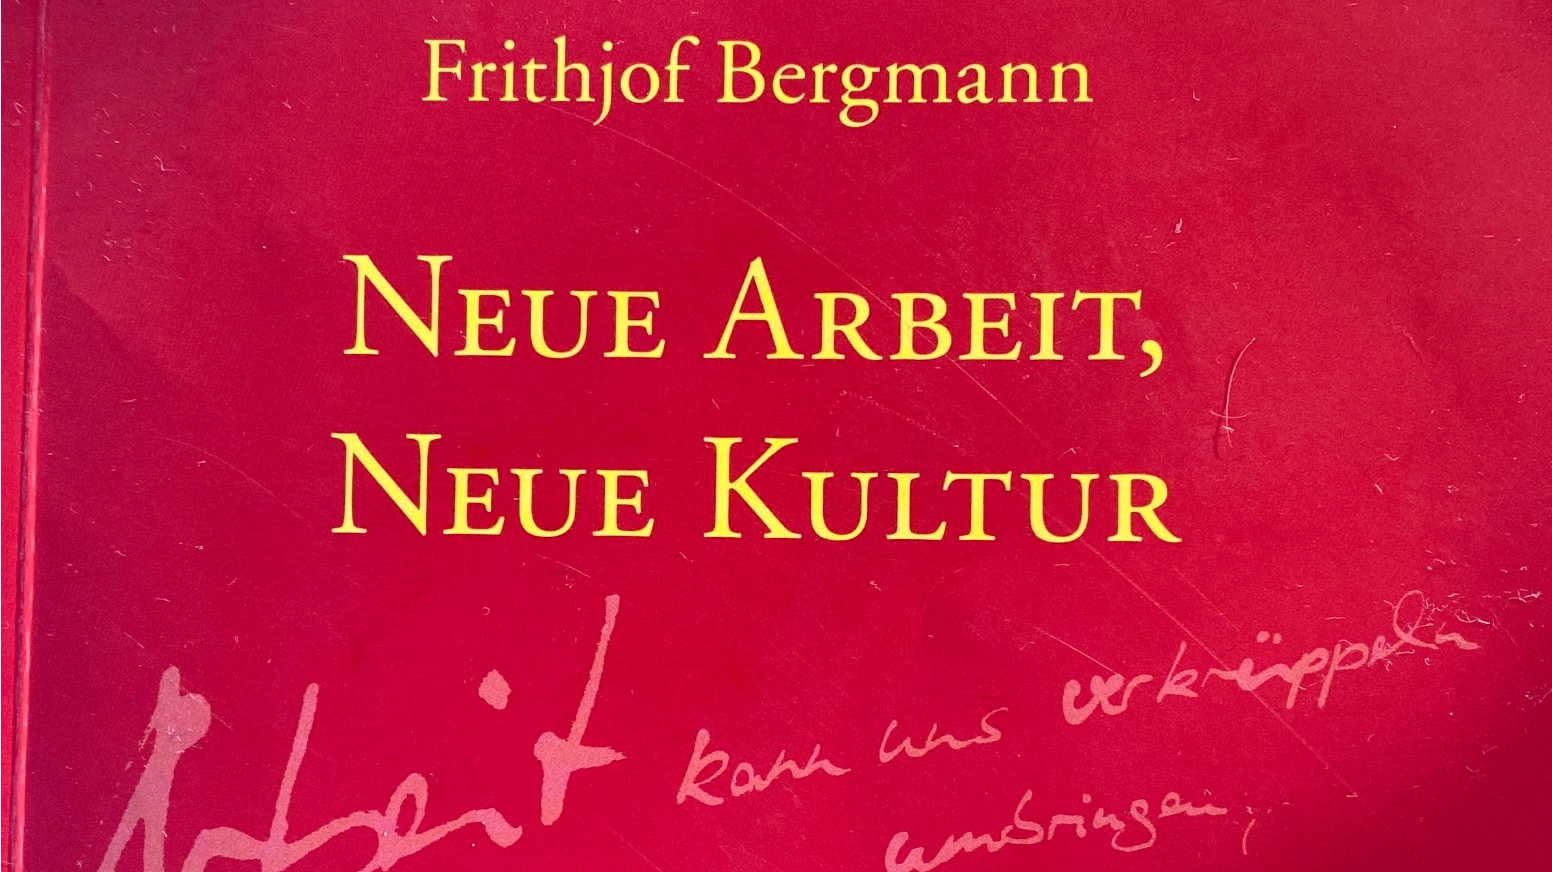 Frithjof Bergmann - Neue Arbeit